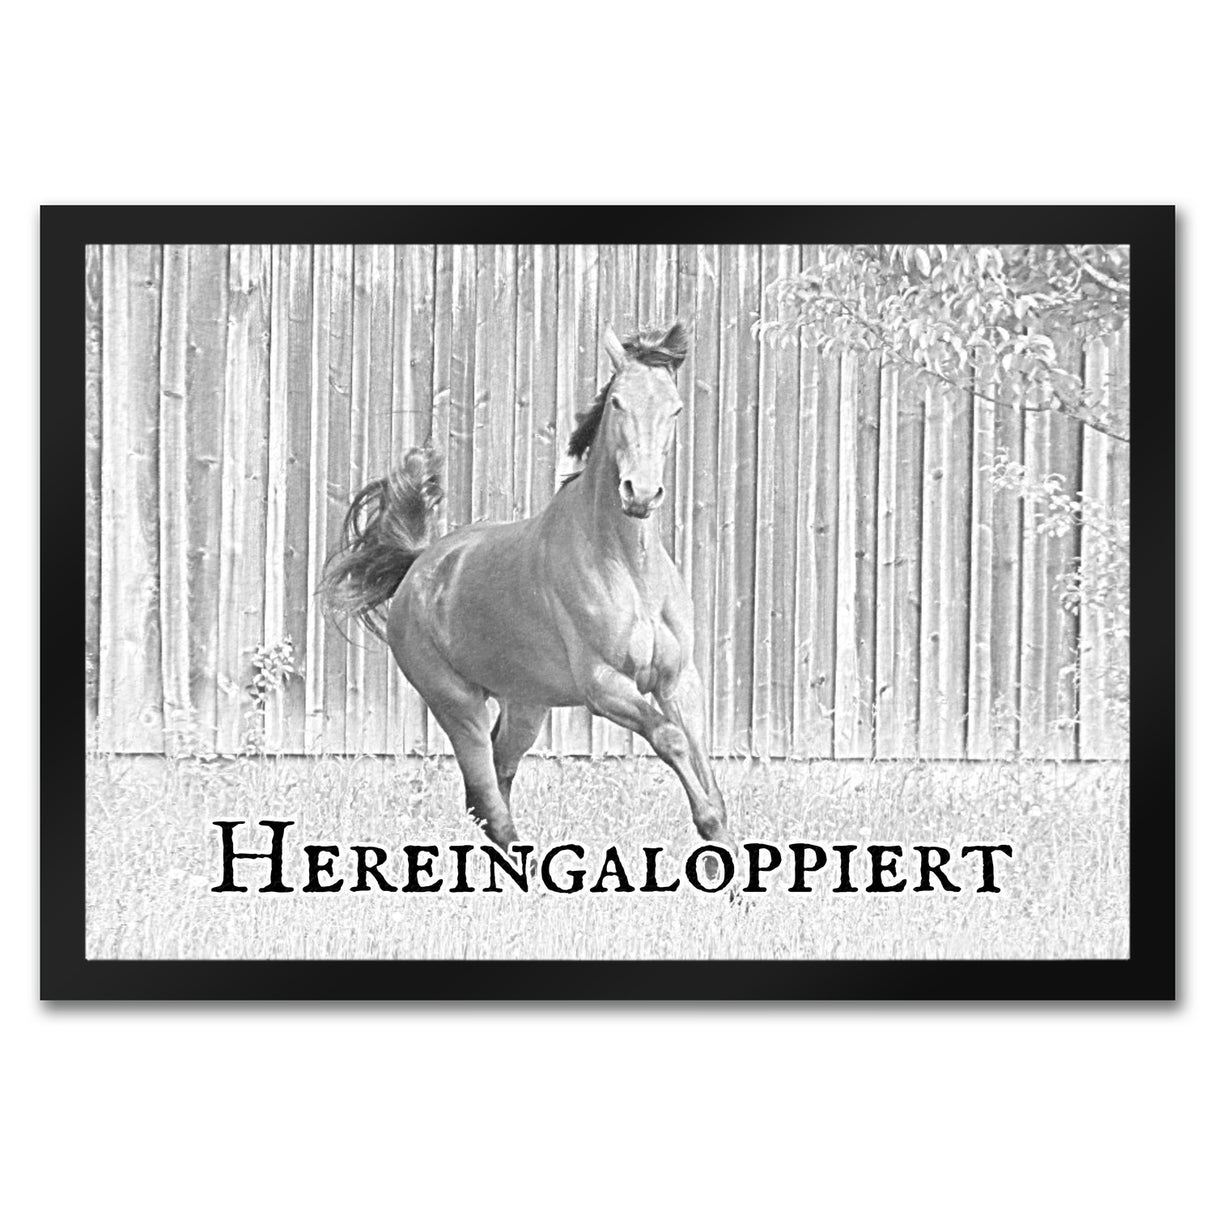 Hereingaloppiert Fussmatte mit Pferd für jeden Pferdeliebhaber ein Muss